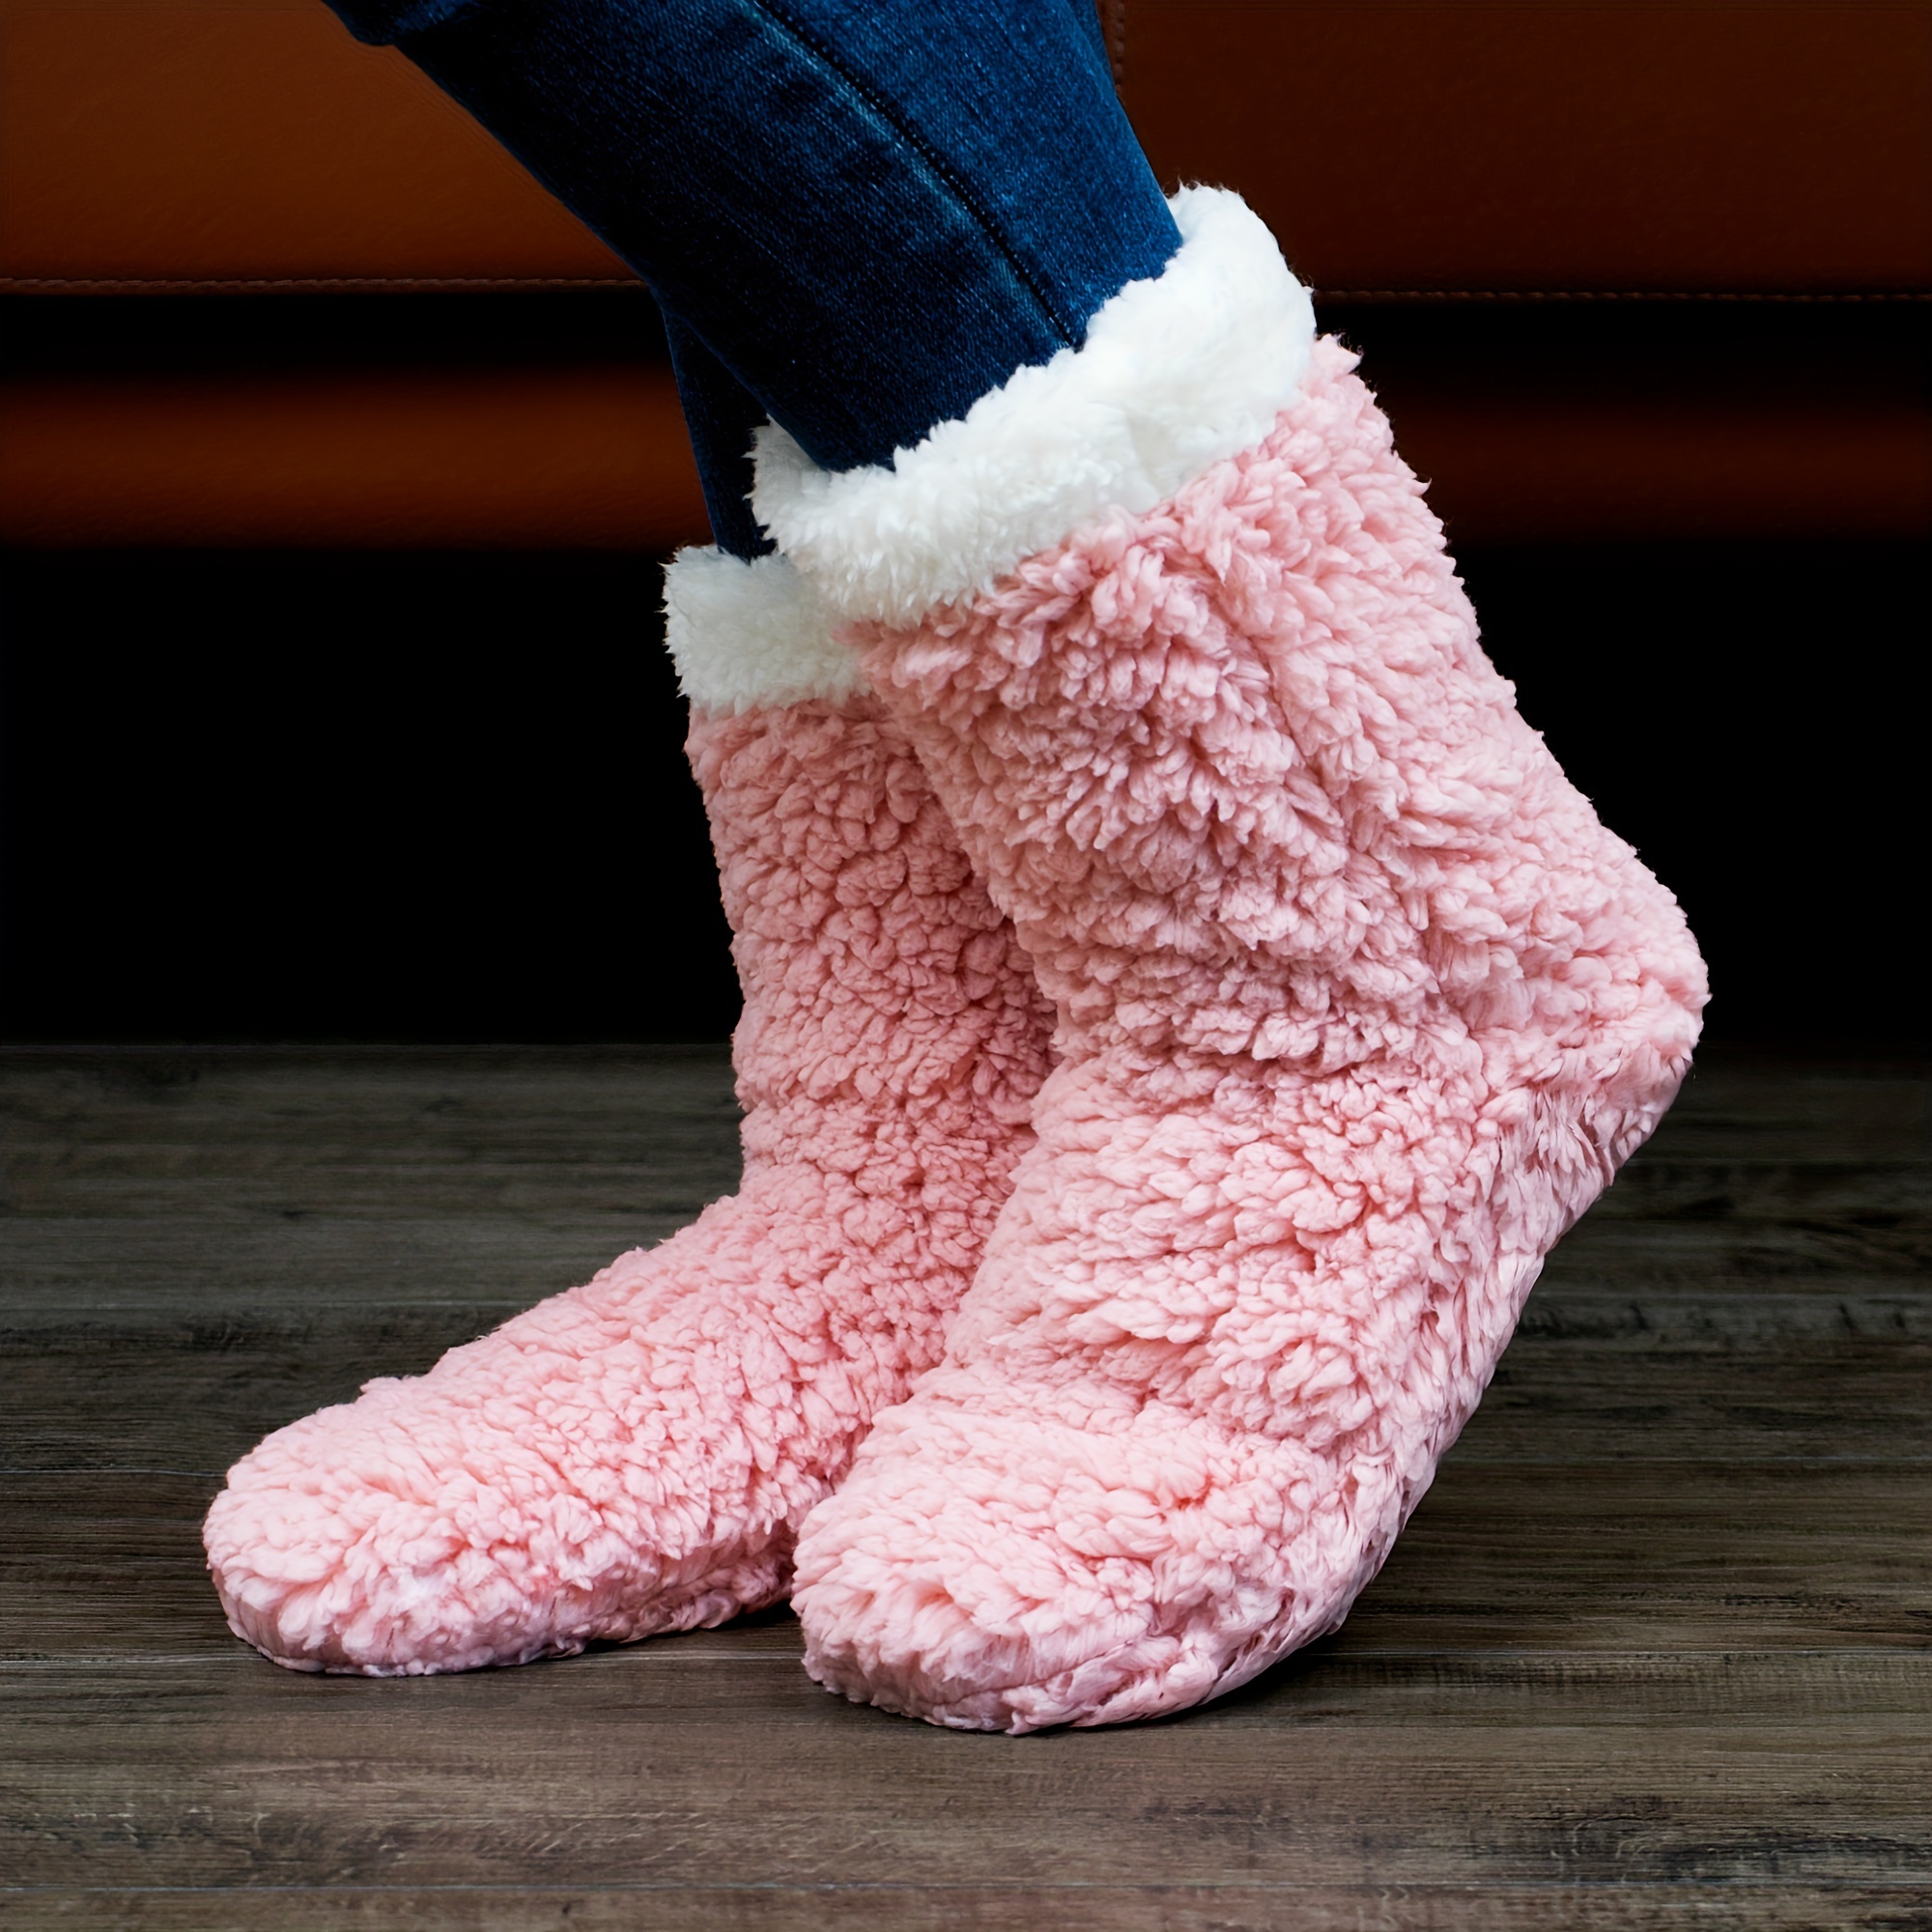 Buy Pink Fluffy Slipper Socks